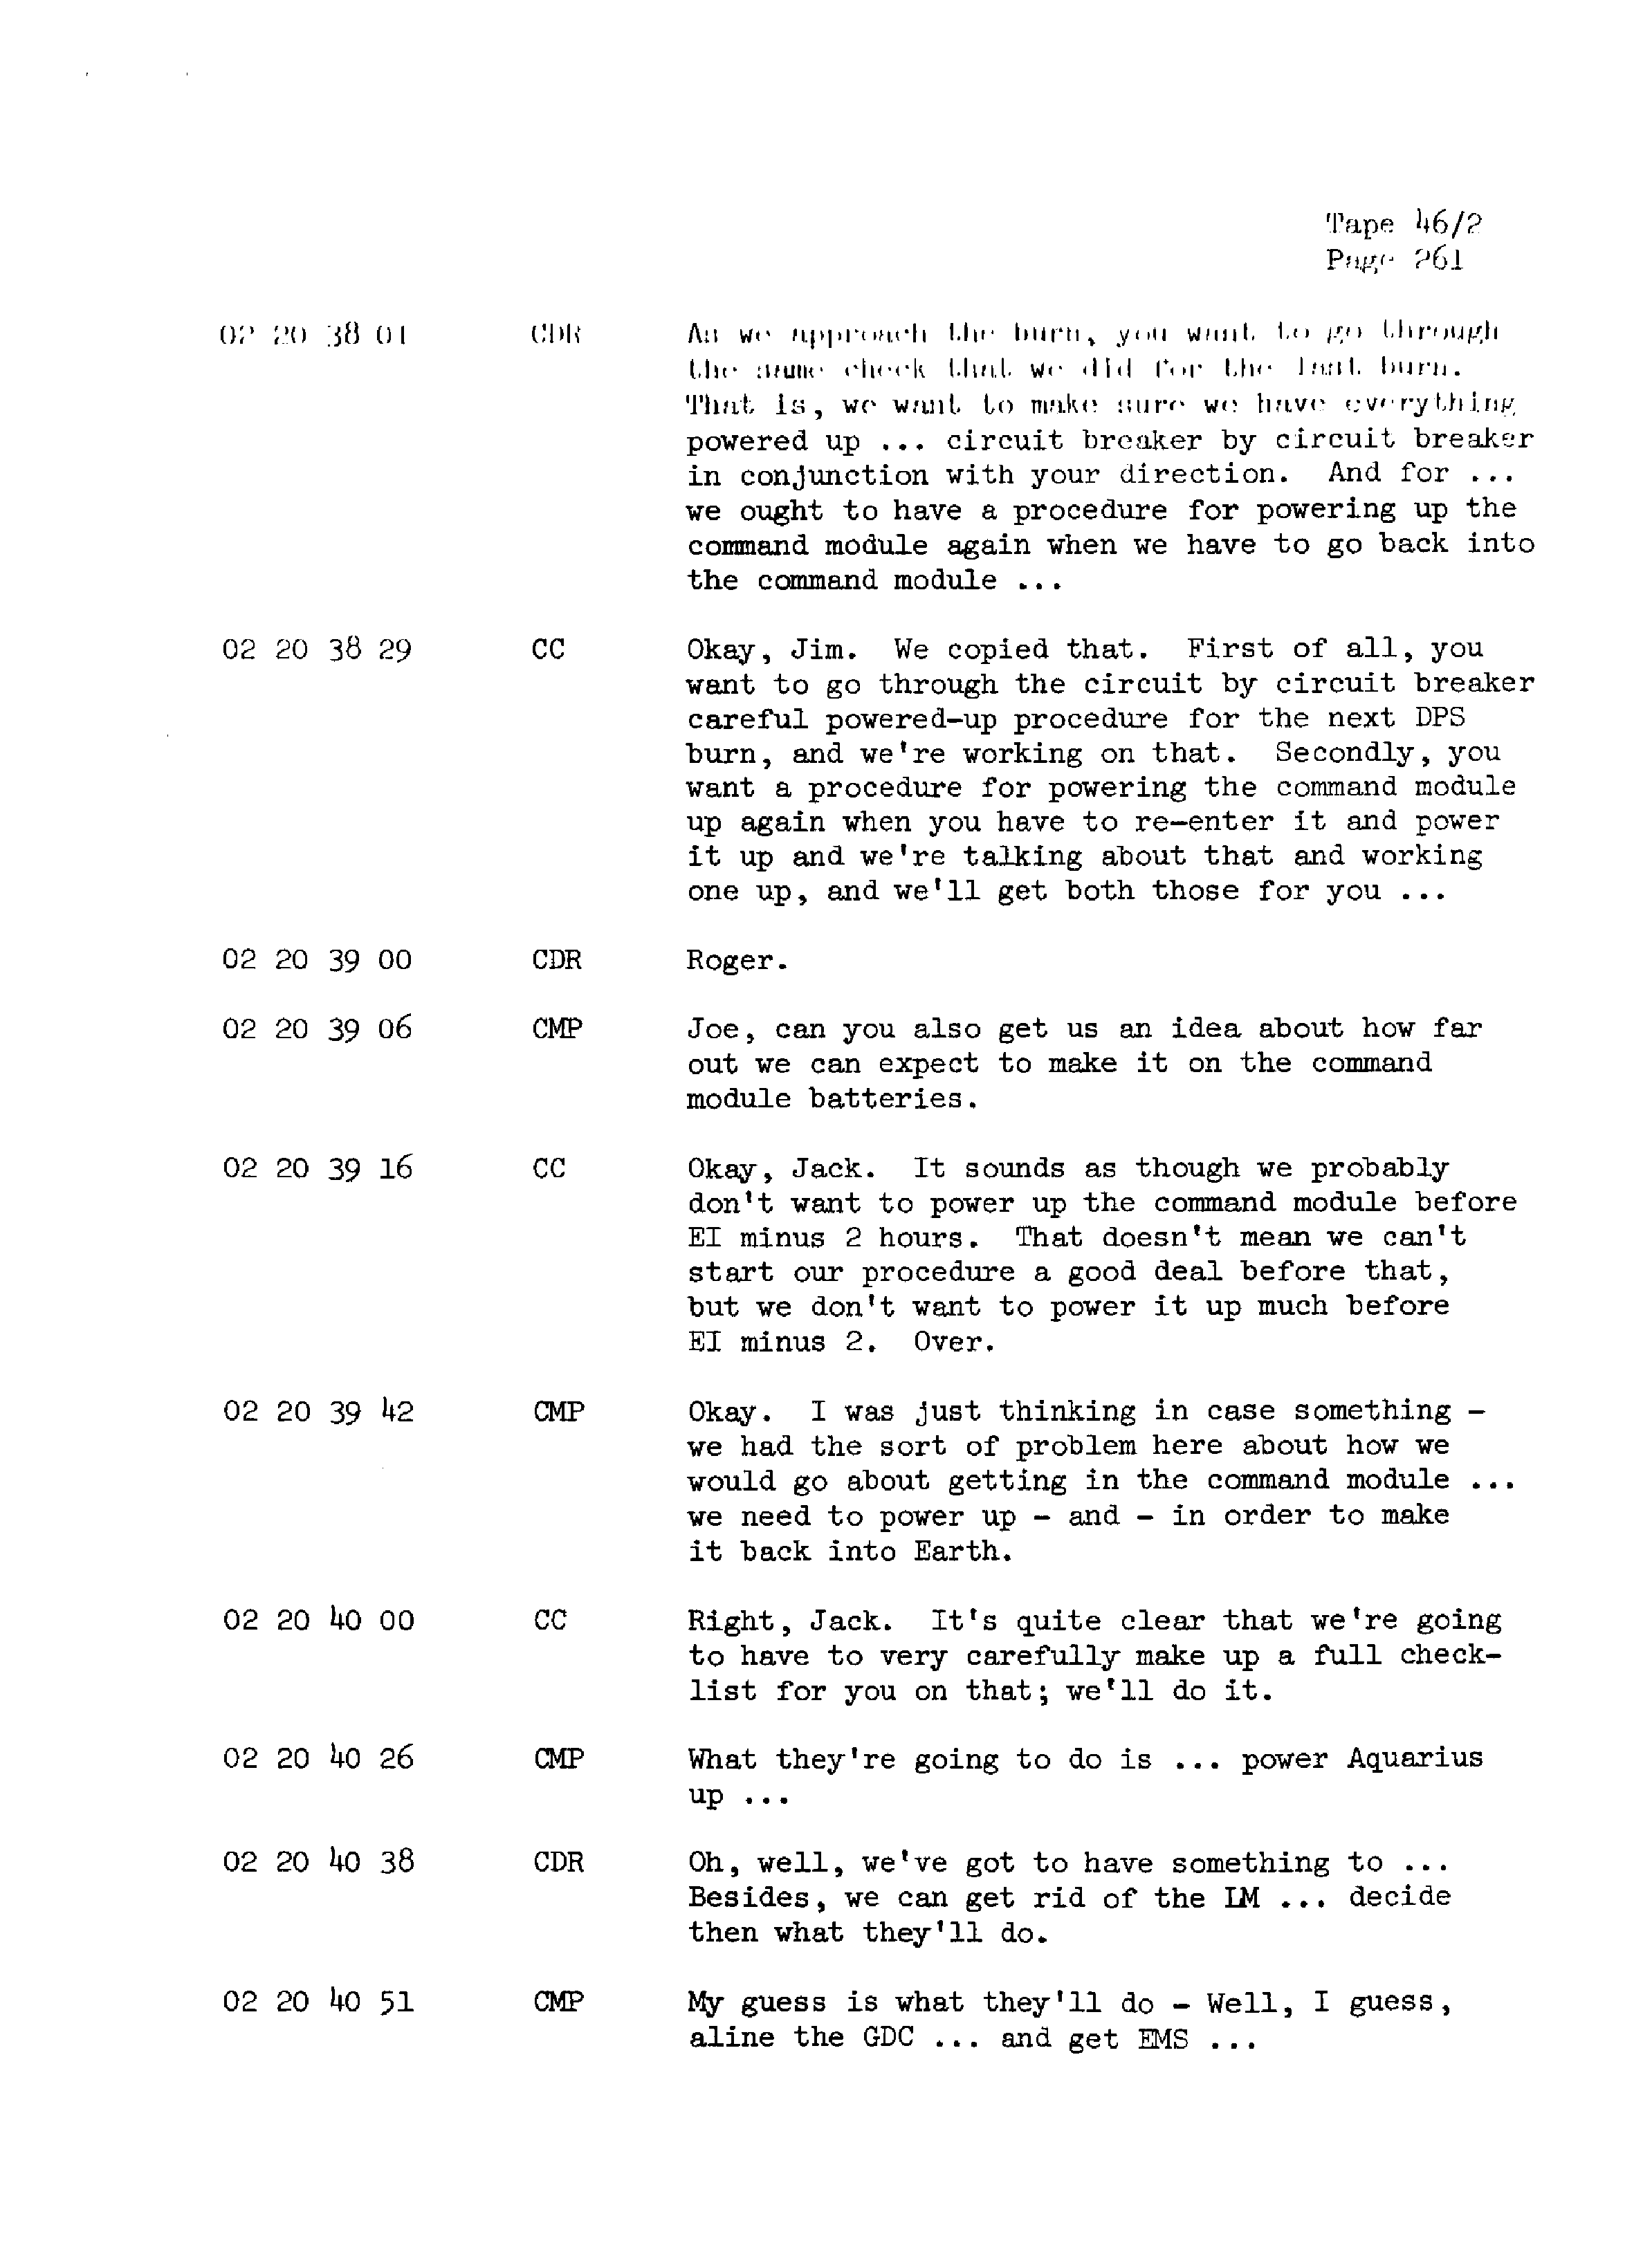 Page 268 of Apollo 13’s original transcript